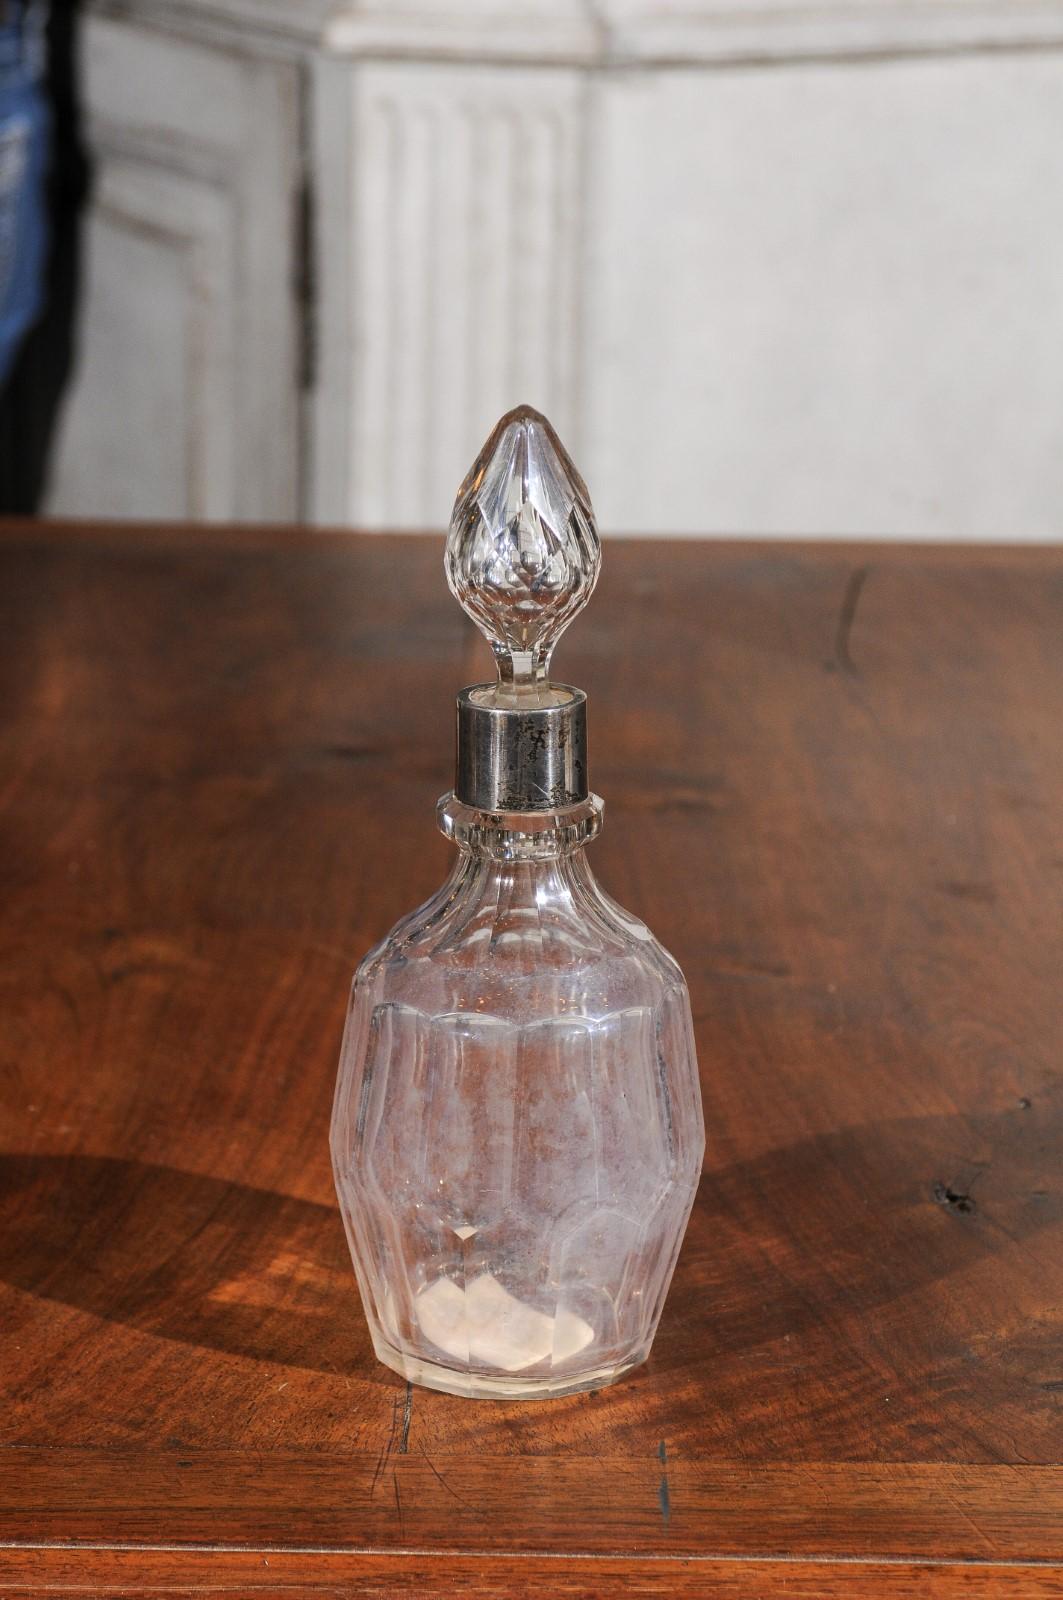 Englische Toilettenflasche aus Kristall und Silber aus dem frühen 19. Jahrhundert, mit Stopfen. Dieser im zweiten Jahrzehnt des 19. Jahrhunderts in England entstandene Flakon für Toilettenartikel hat einen facettierten Körper aus Kristall, der mit